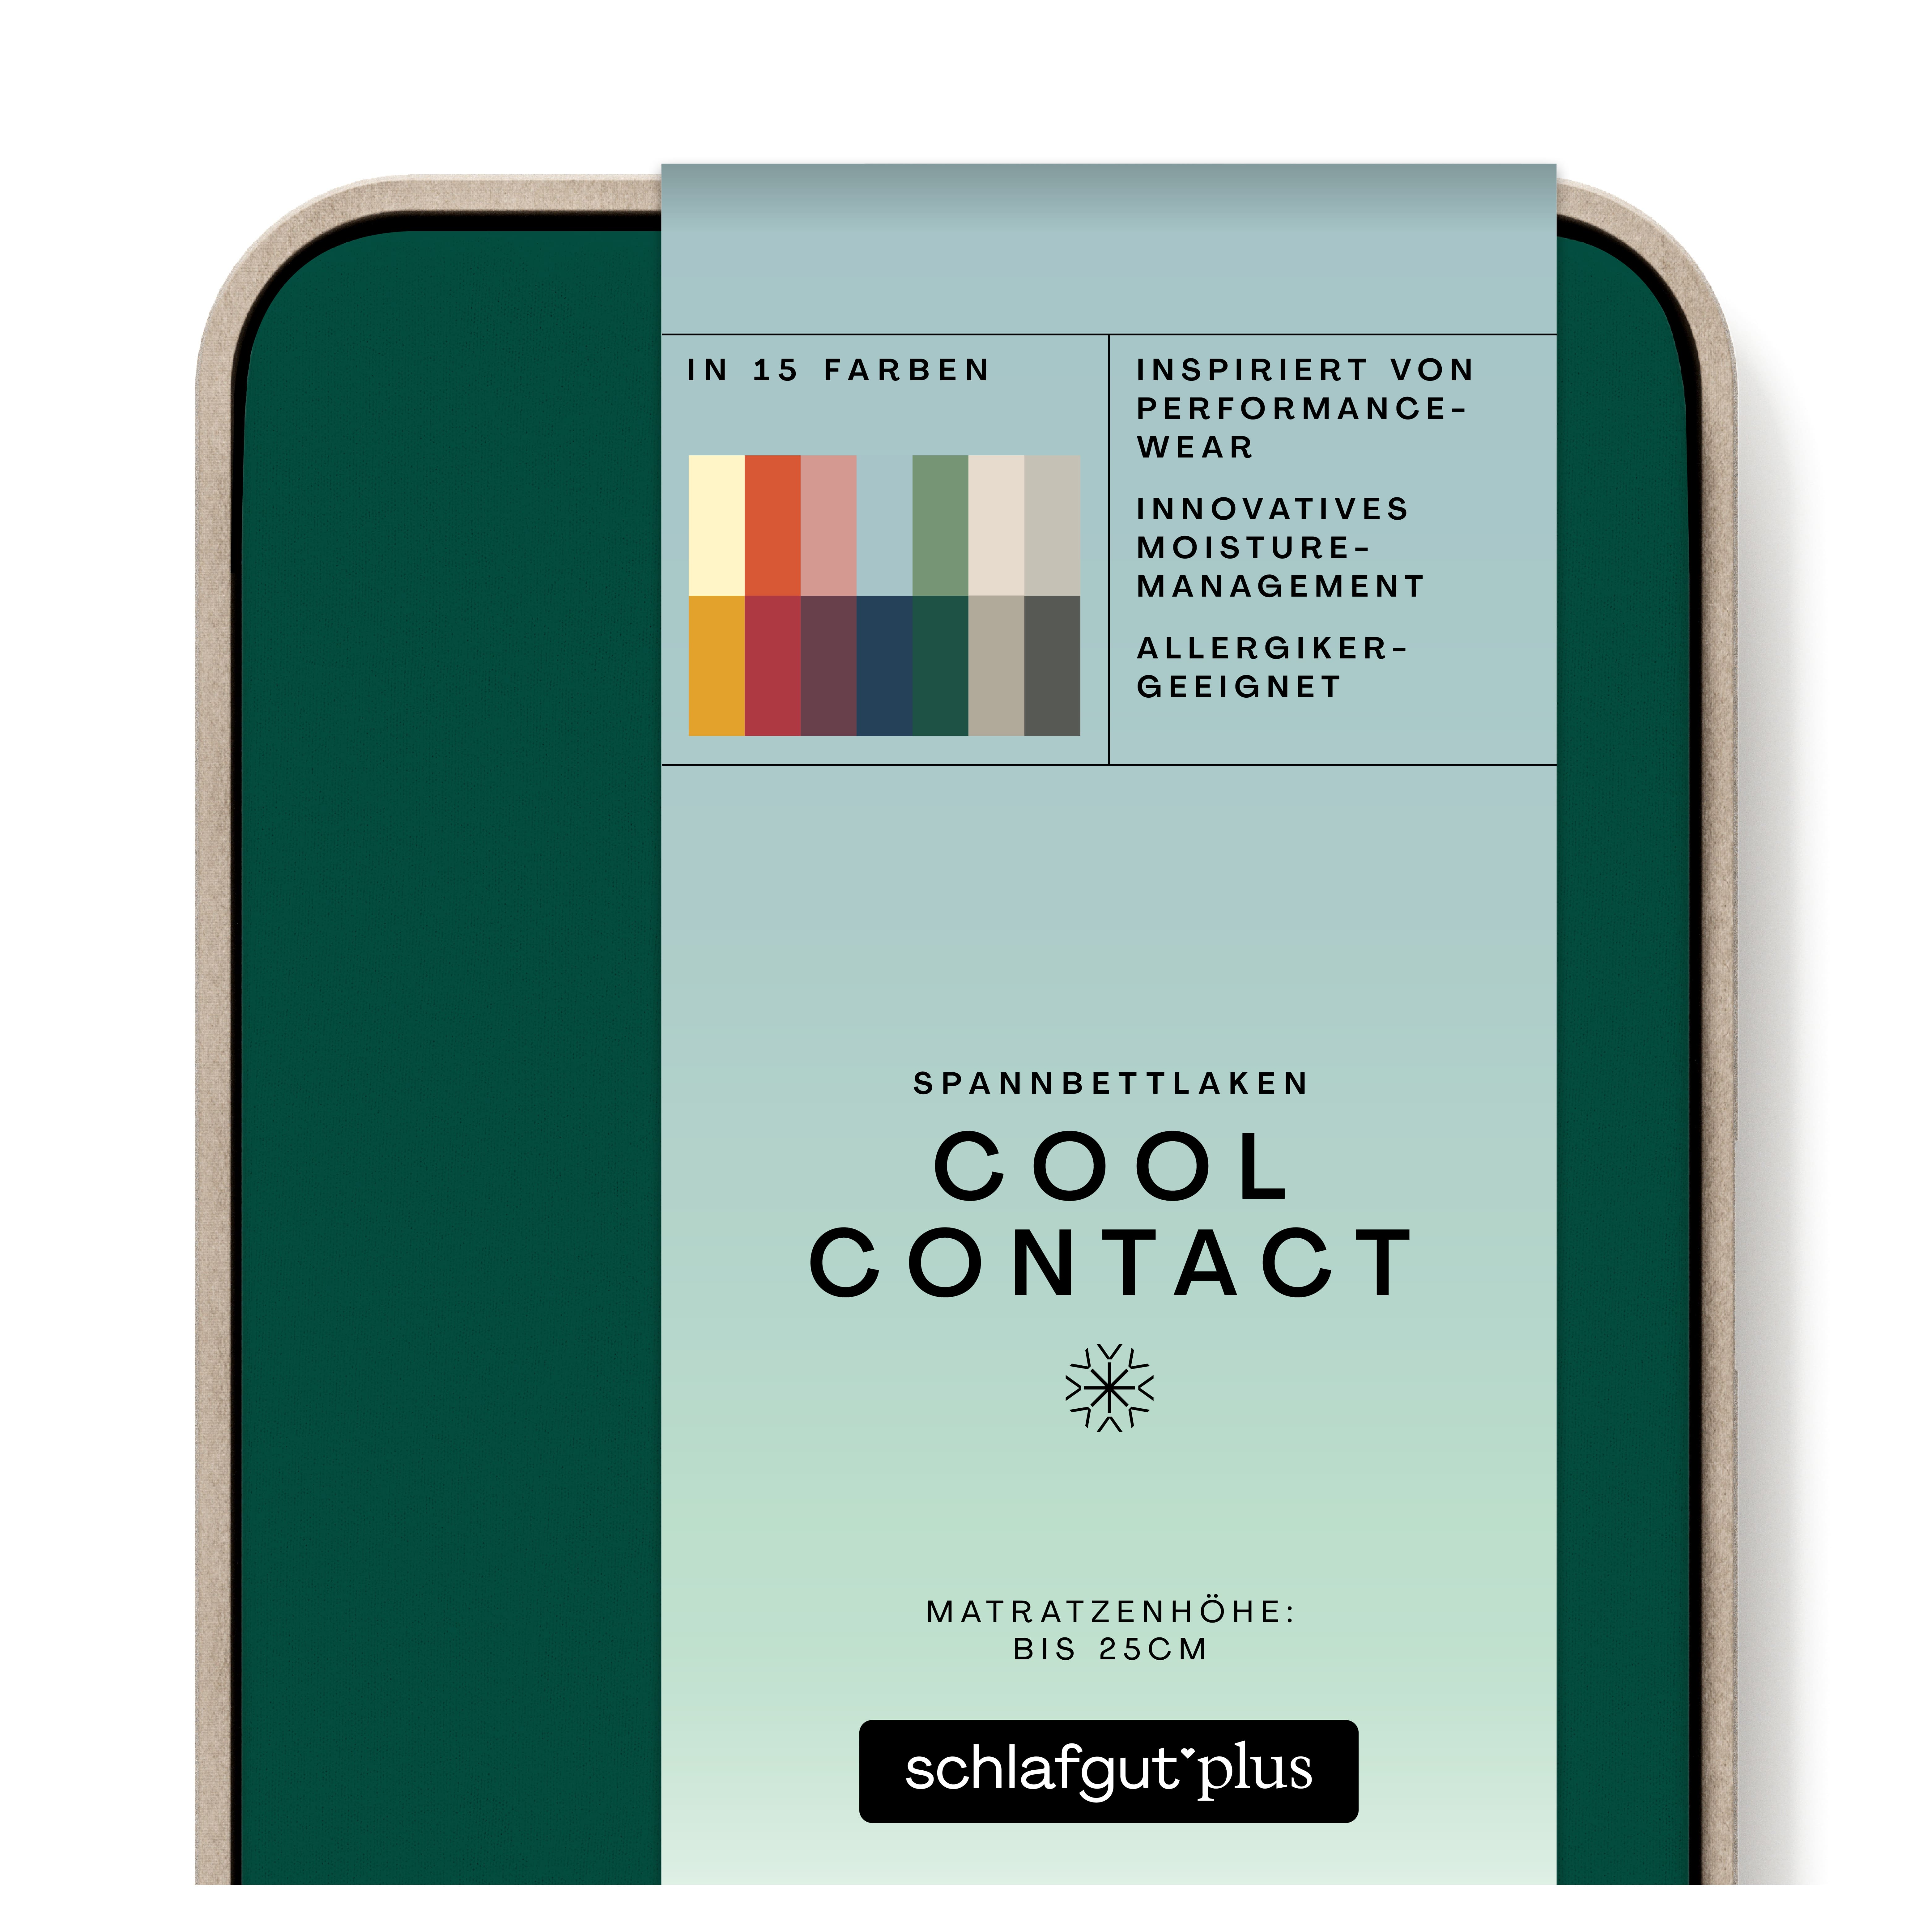 Das Produktbild vom Spannbettlaken der Reihe Cool Contact in Farbe green deep von Schlafgut